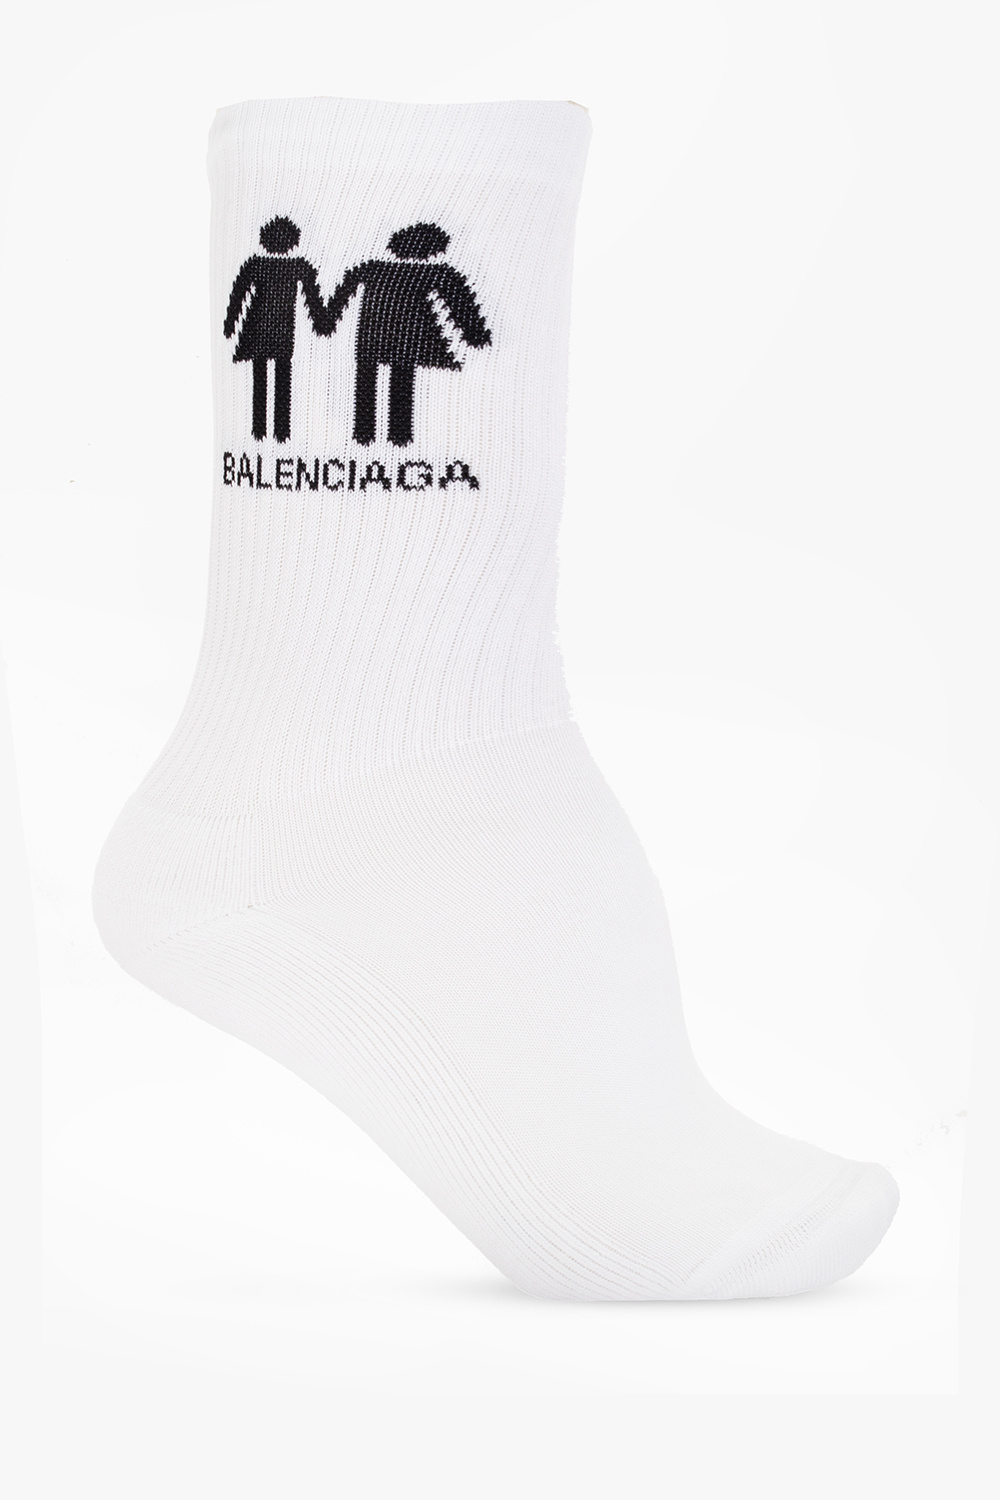 Balenciaga Socks ‘Pride 2022’ collection